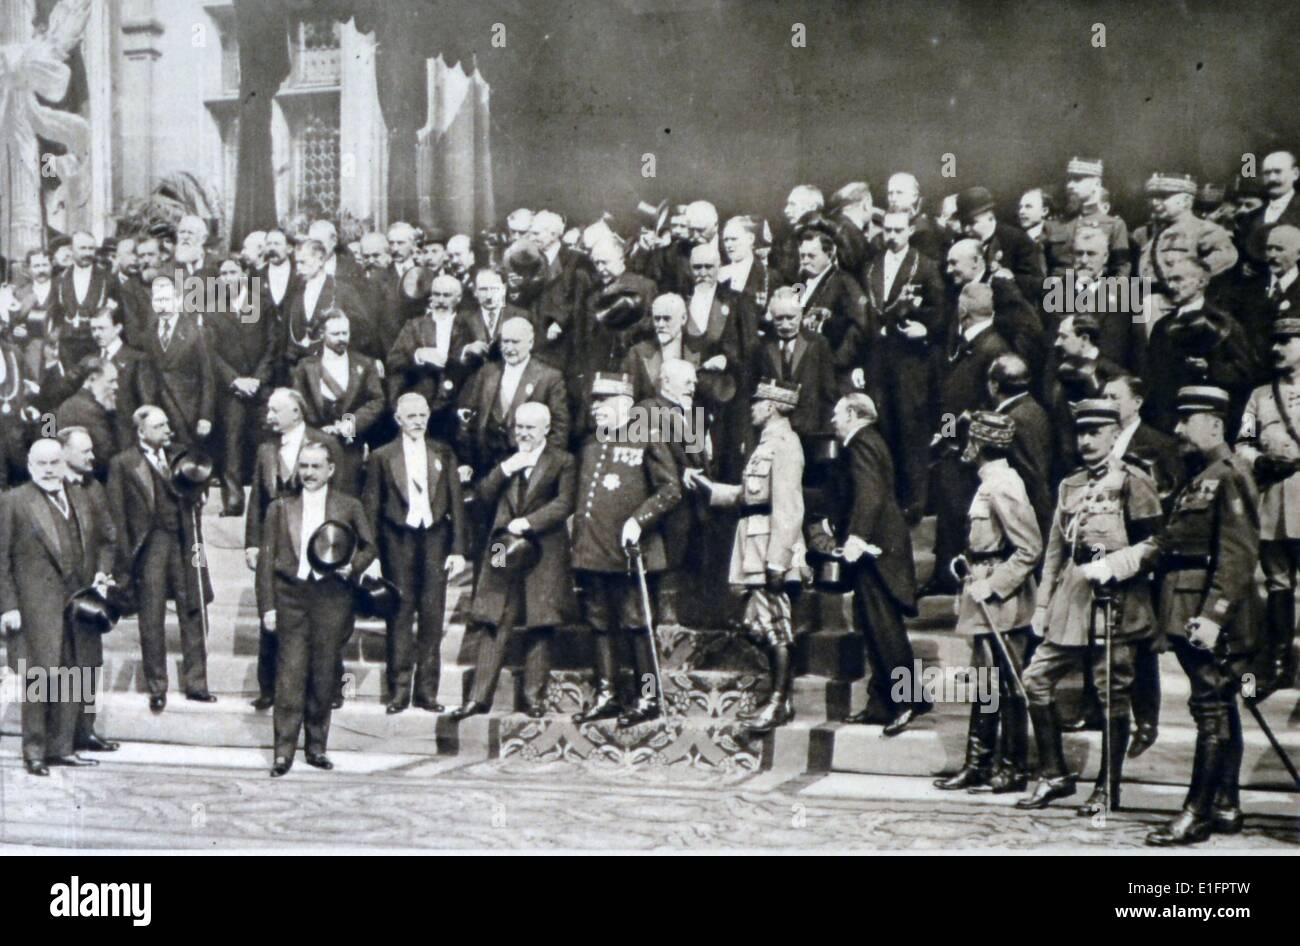 Fotografia di alcuni degli uomini che hanno indotto la Francia attraverso anni di prova a trionfare alla fine della prima guerra mondiale. Datata 1919. Parigi, Francia Foto Stock